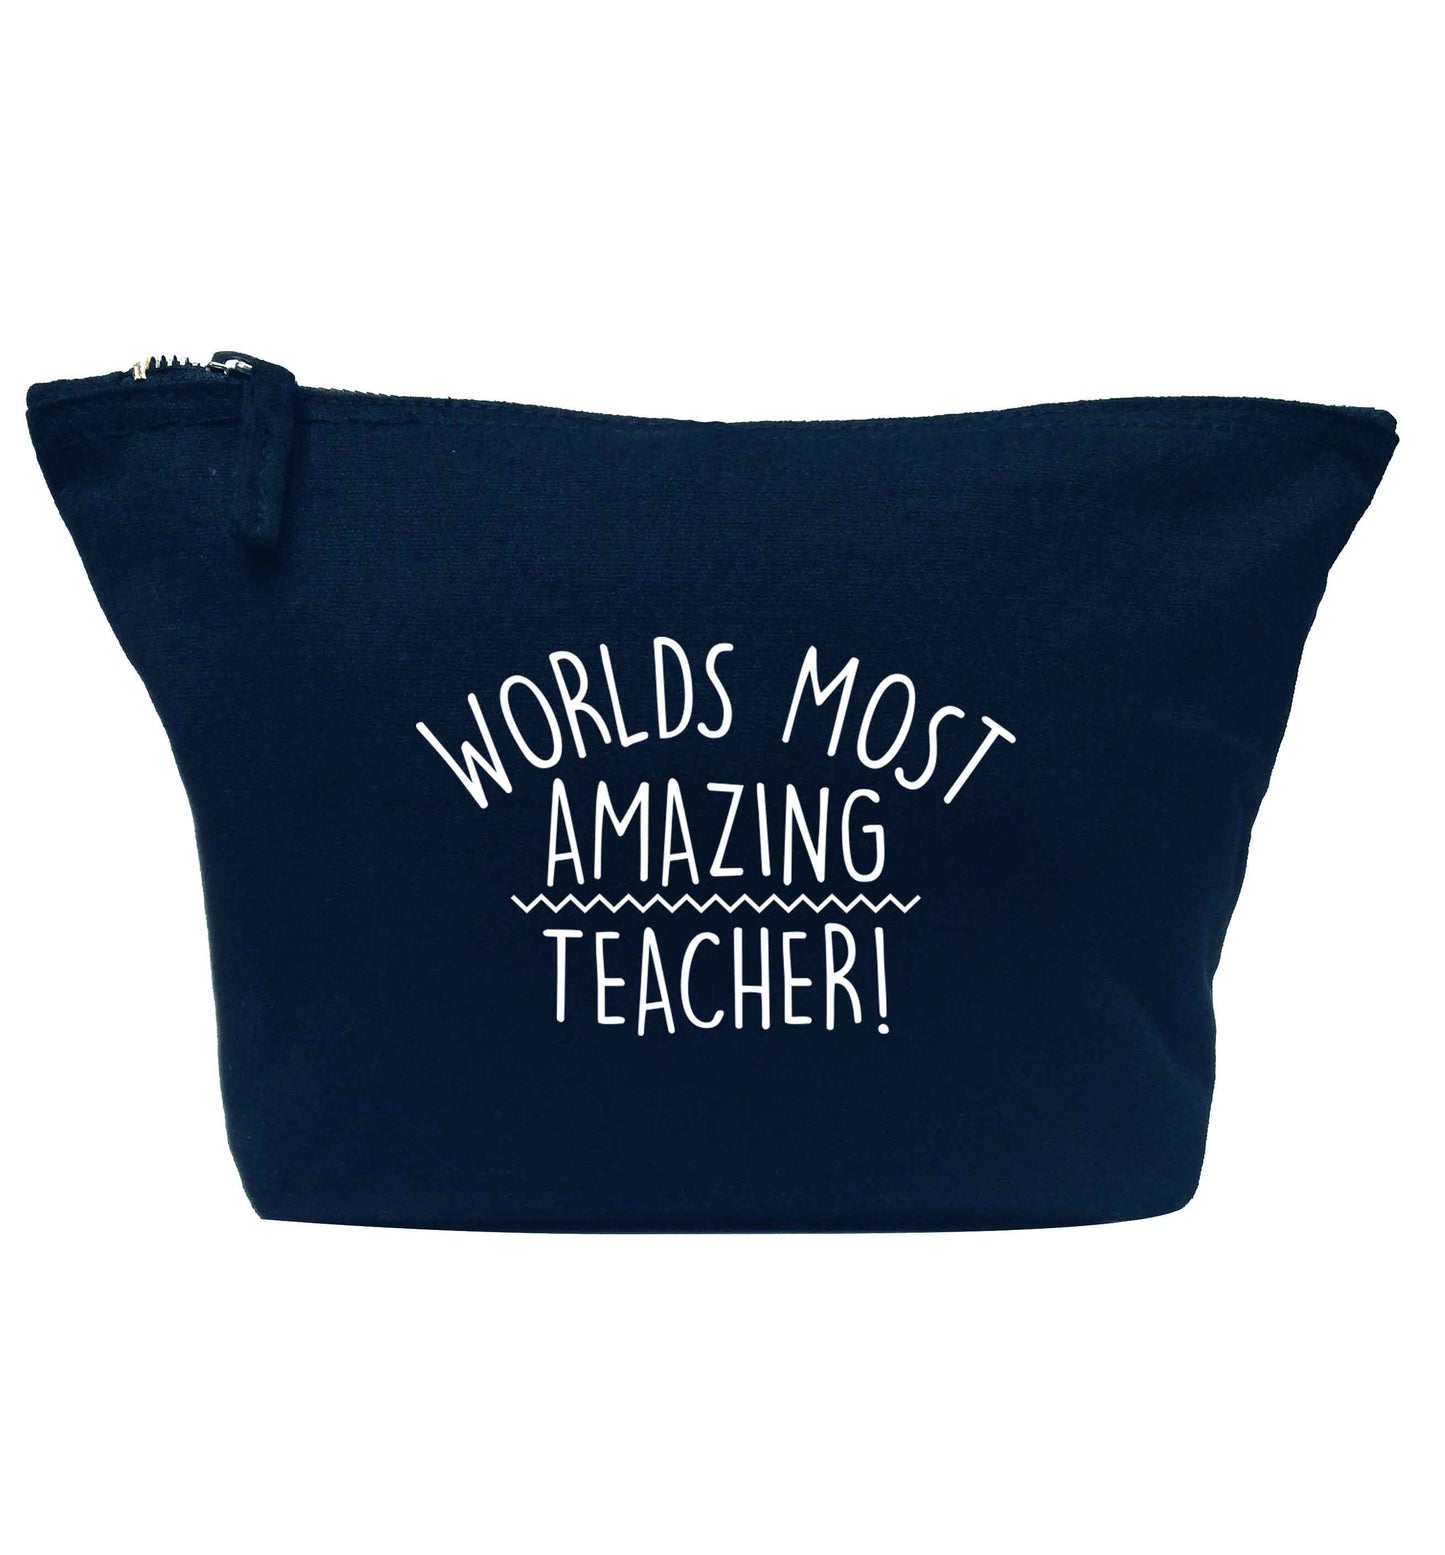 Worlds most amazing teacher navy makeup bag